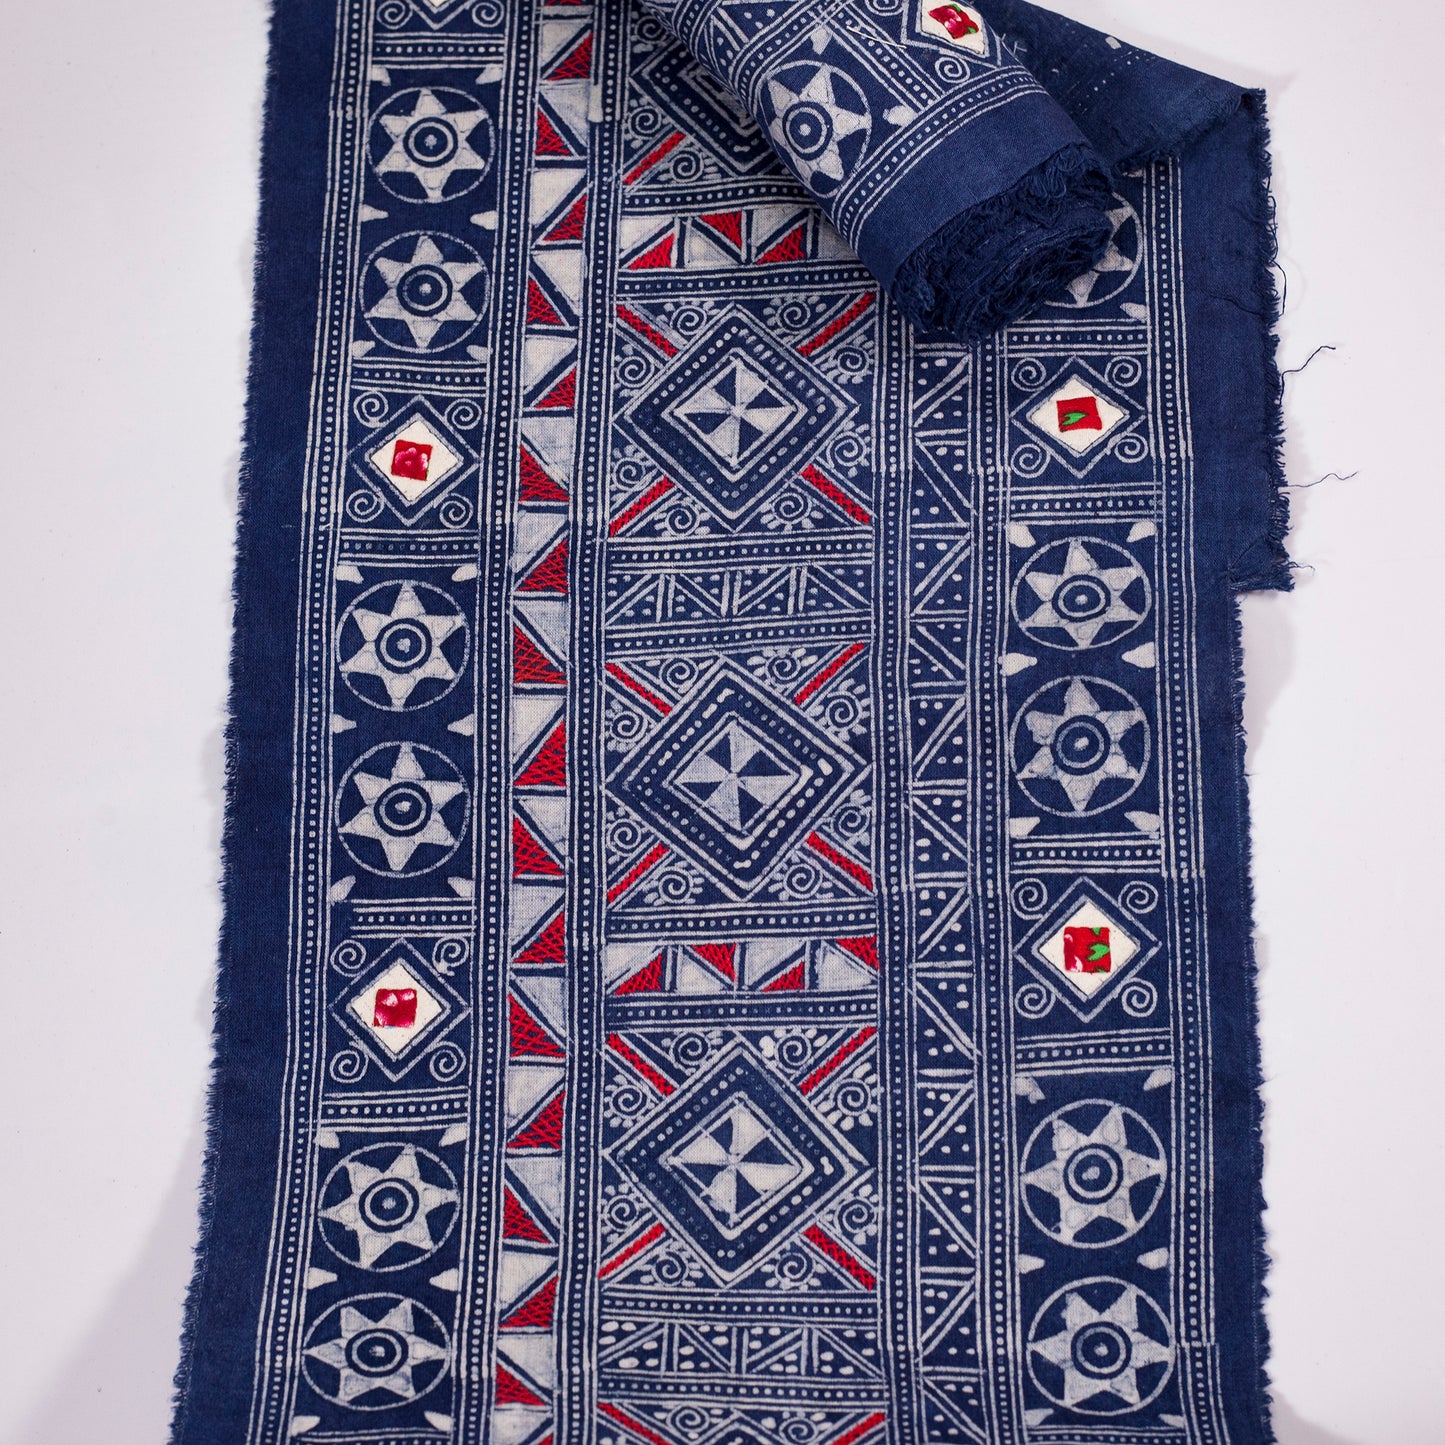 Handgjord H'mong Batik Tyg - Organisk Indigo och Bivax mönster i bomull